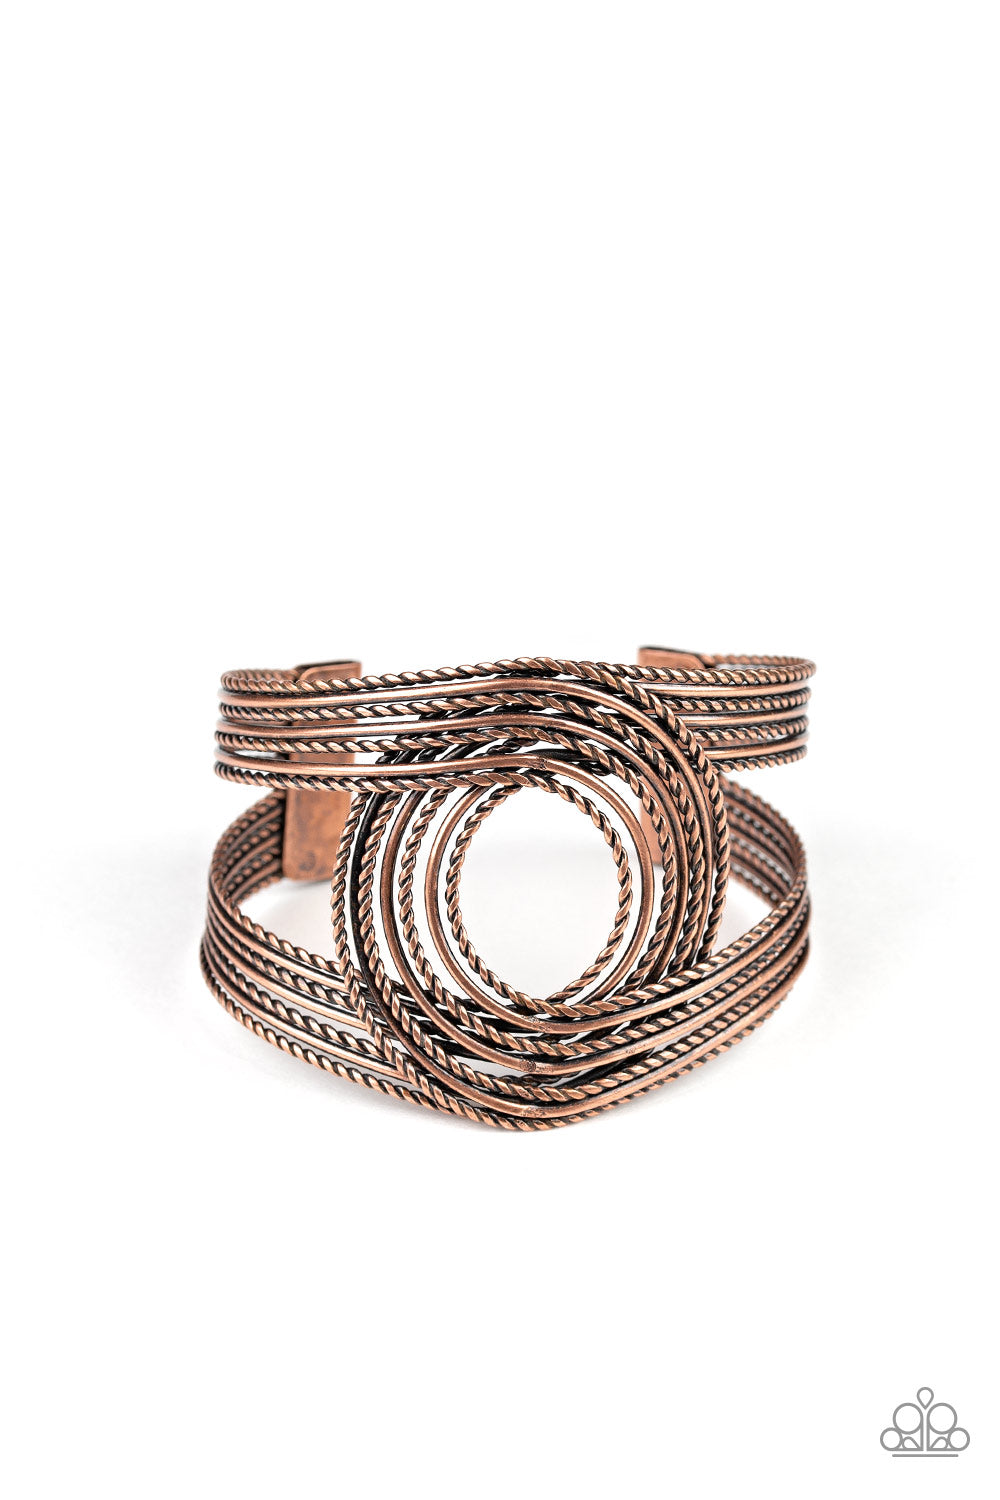 Rustic Coils - Copper Bracelet